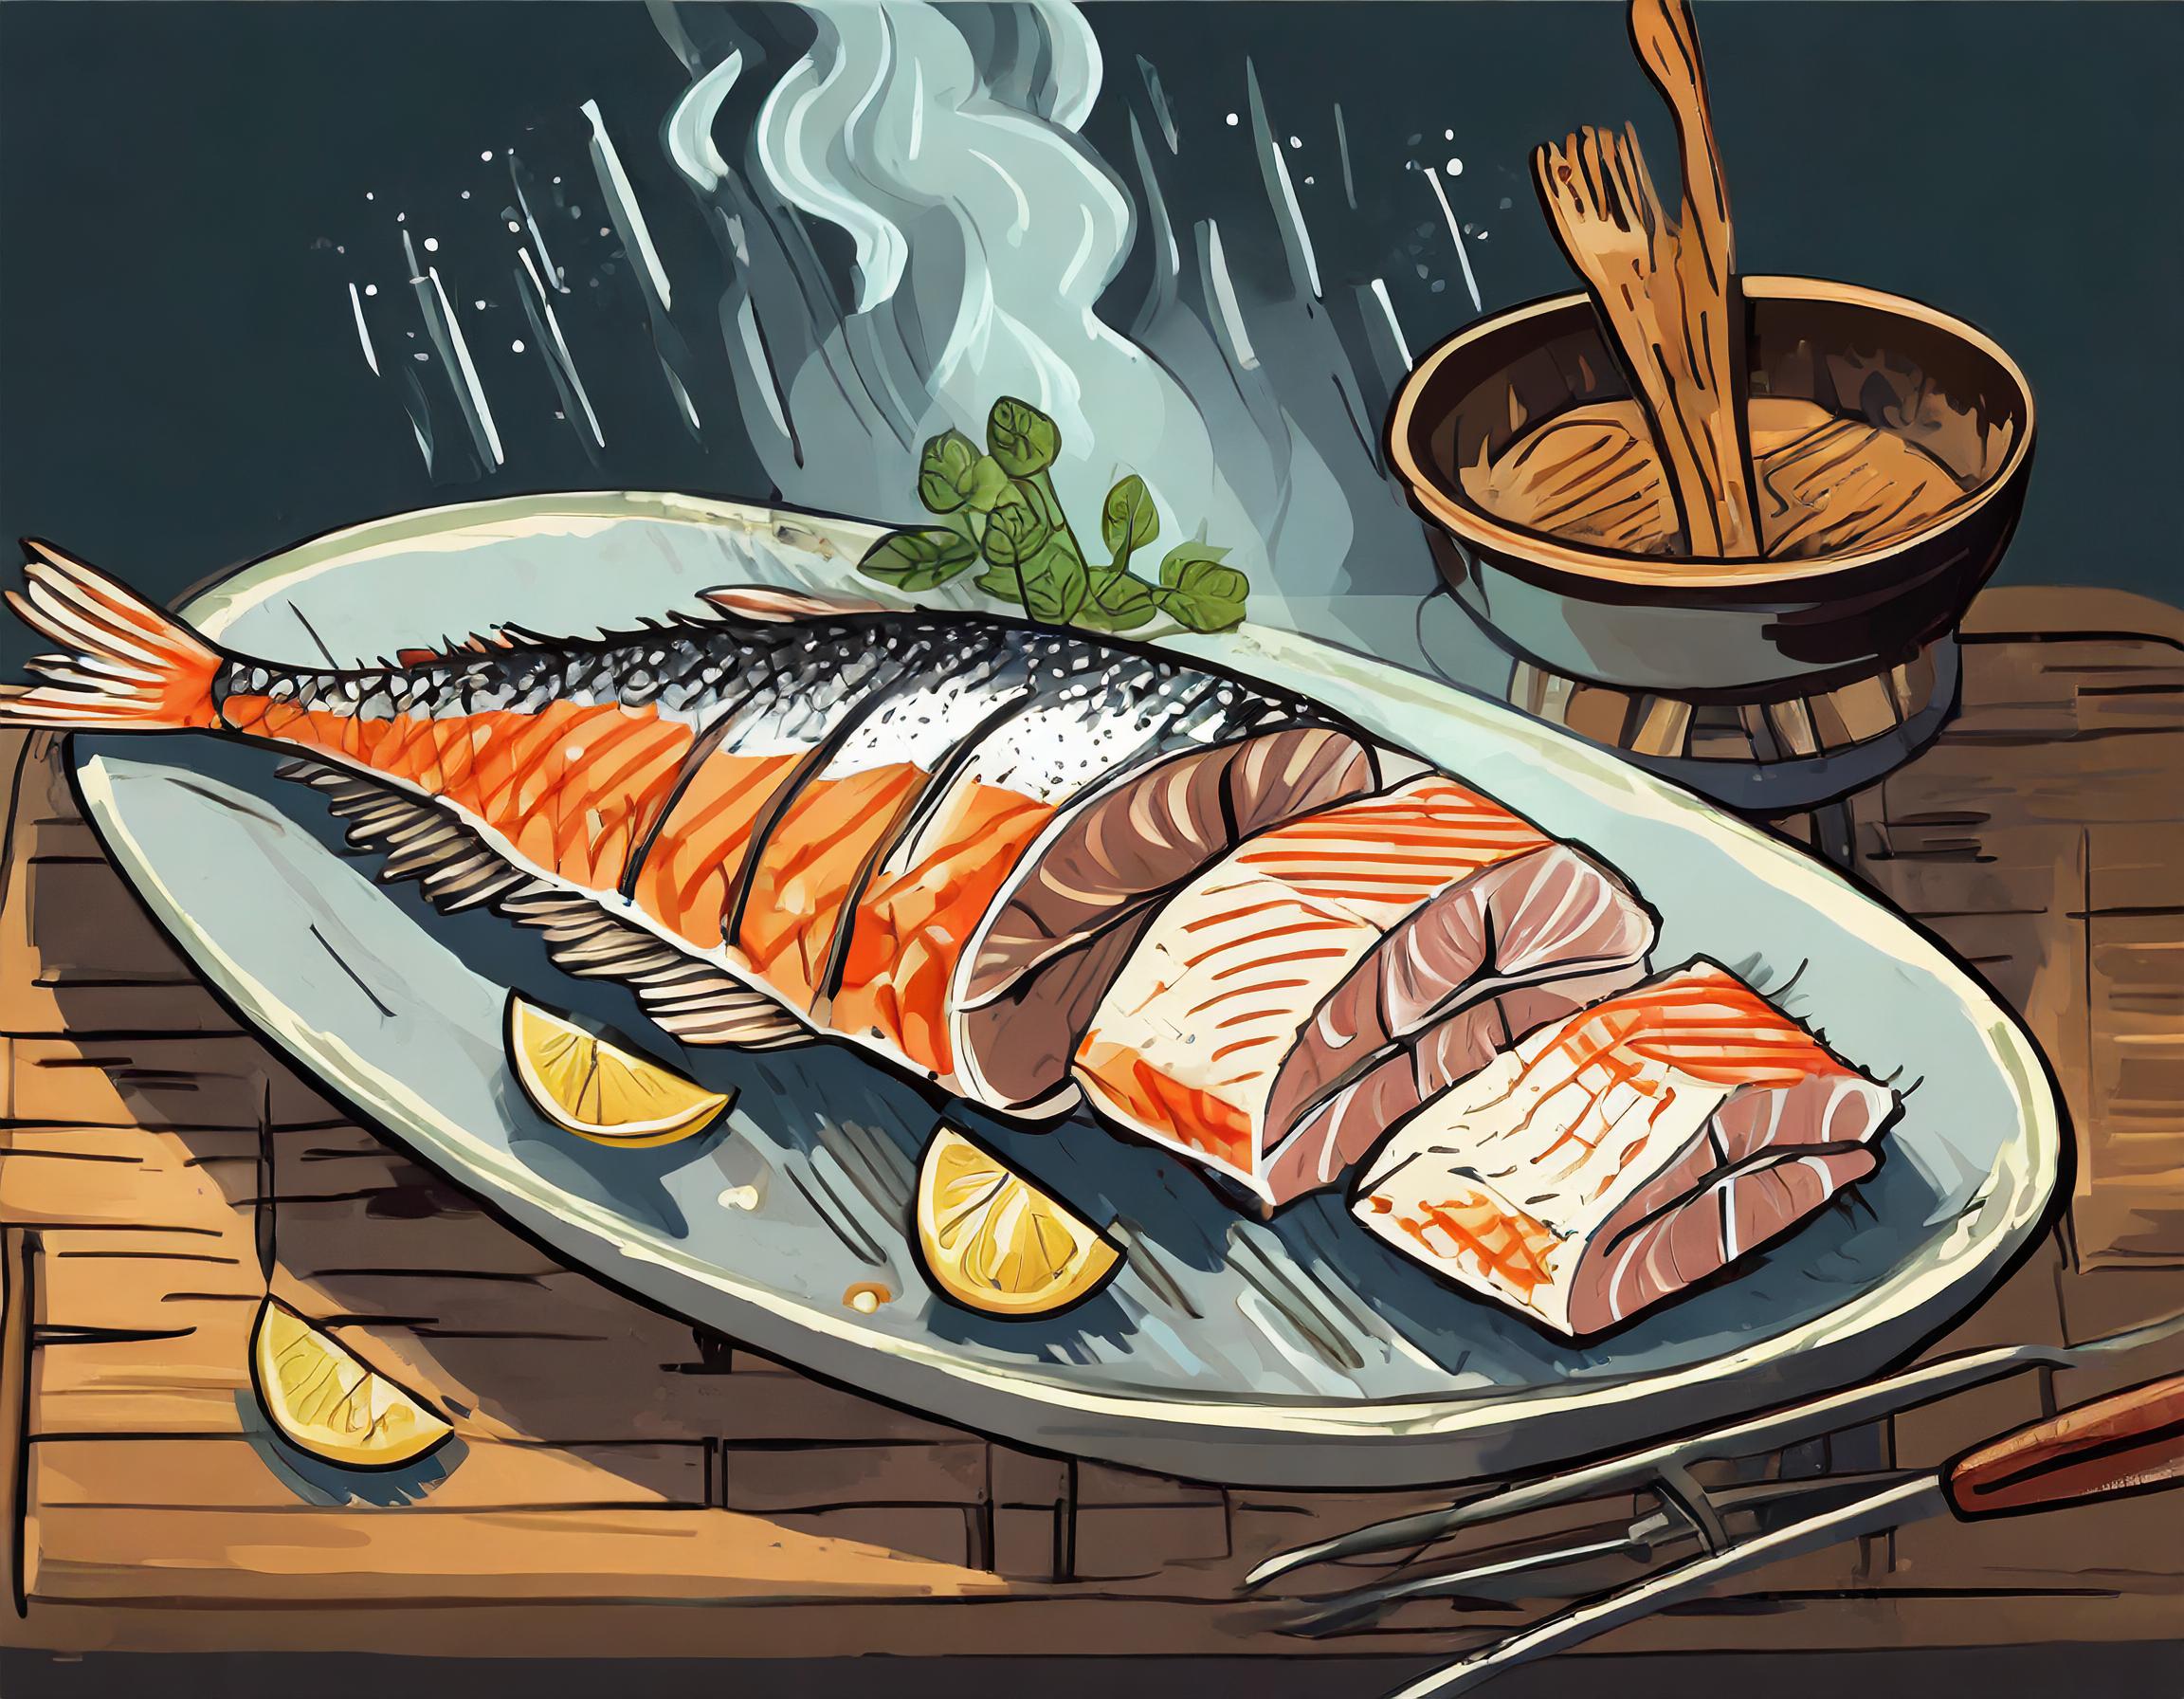 Fisch grillen - Anleitung Schritt 4 - Servieren